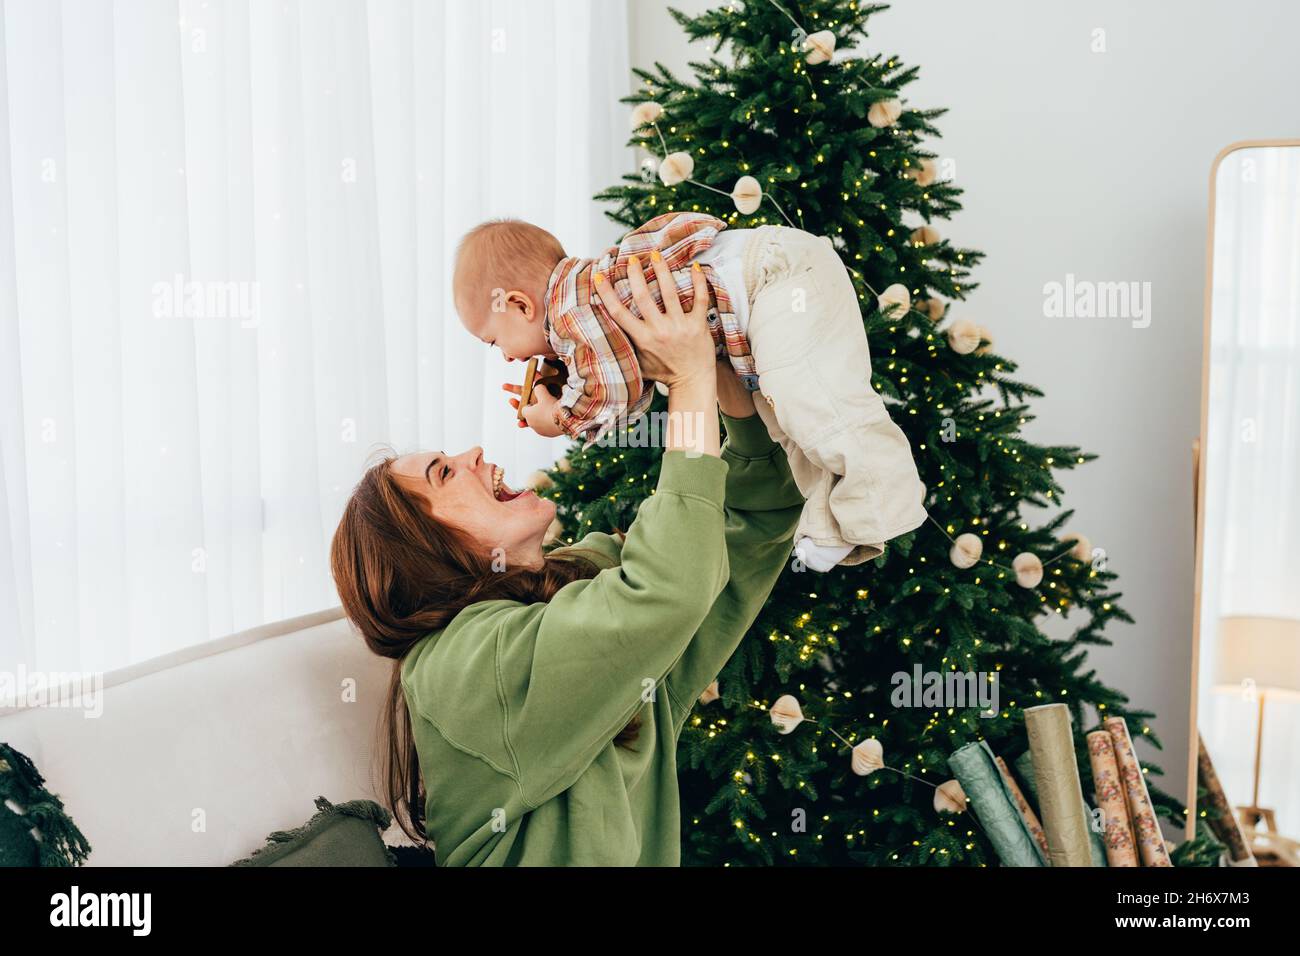 Una joven madre de pelo rojo juega y se divierte con su bebé, levantando a su hija por encima de su cabeza. Navidad familiar en casa. Foto de stock